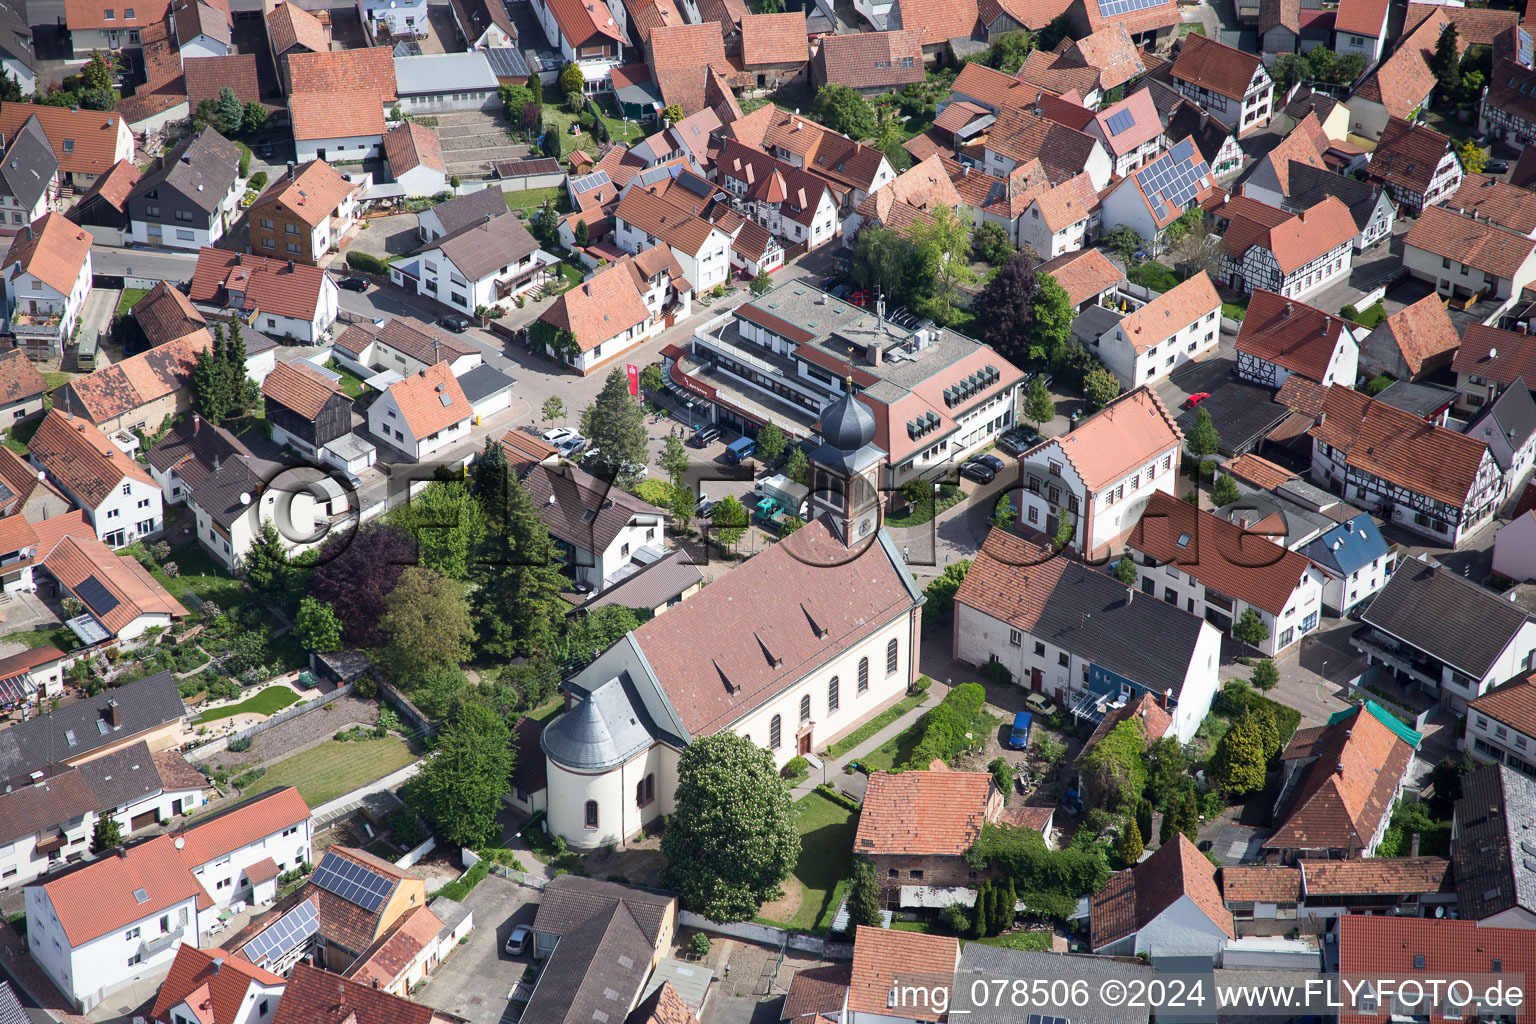 Vue aérienne de Bâtiment d'église au centre du village à Hagenbach dans le département Rhénanie-Palatinat, Allemagne